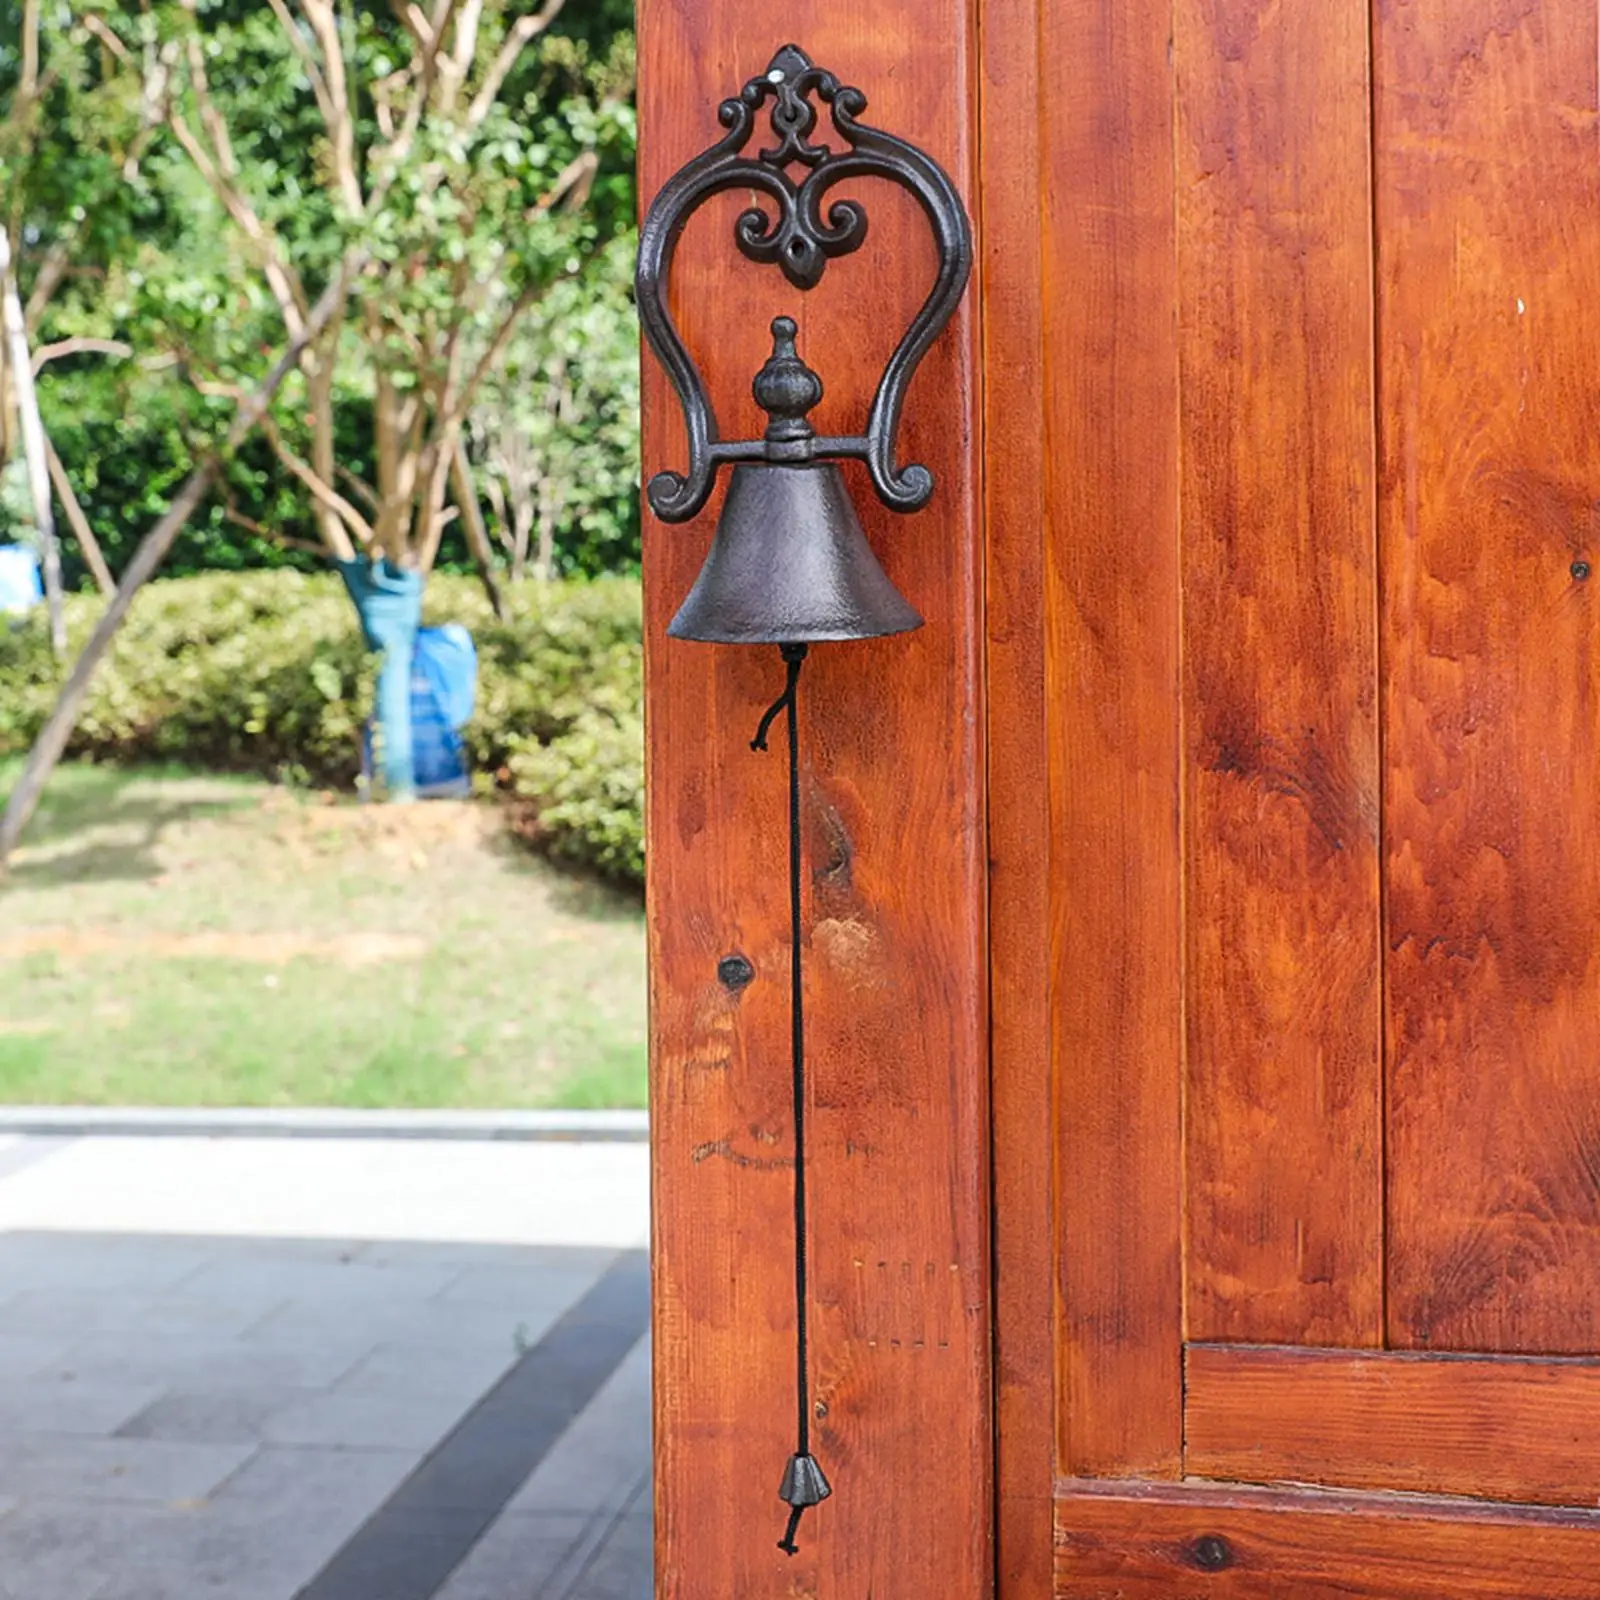 Manually Shaking Doorbells Cast Iron Dinner Bell Rustic Entry Door Bell Antique Door Bell Iron Doorbells for Home Yard